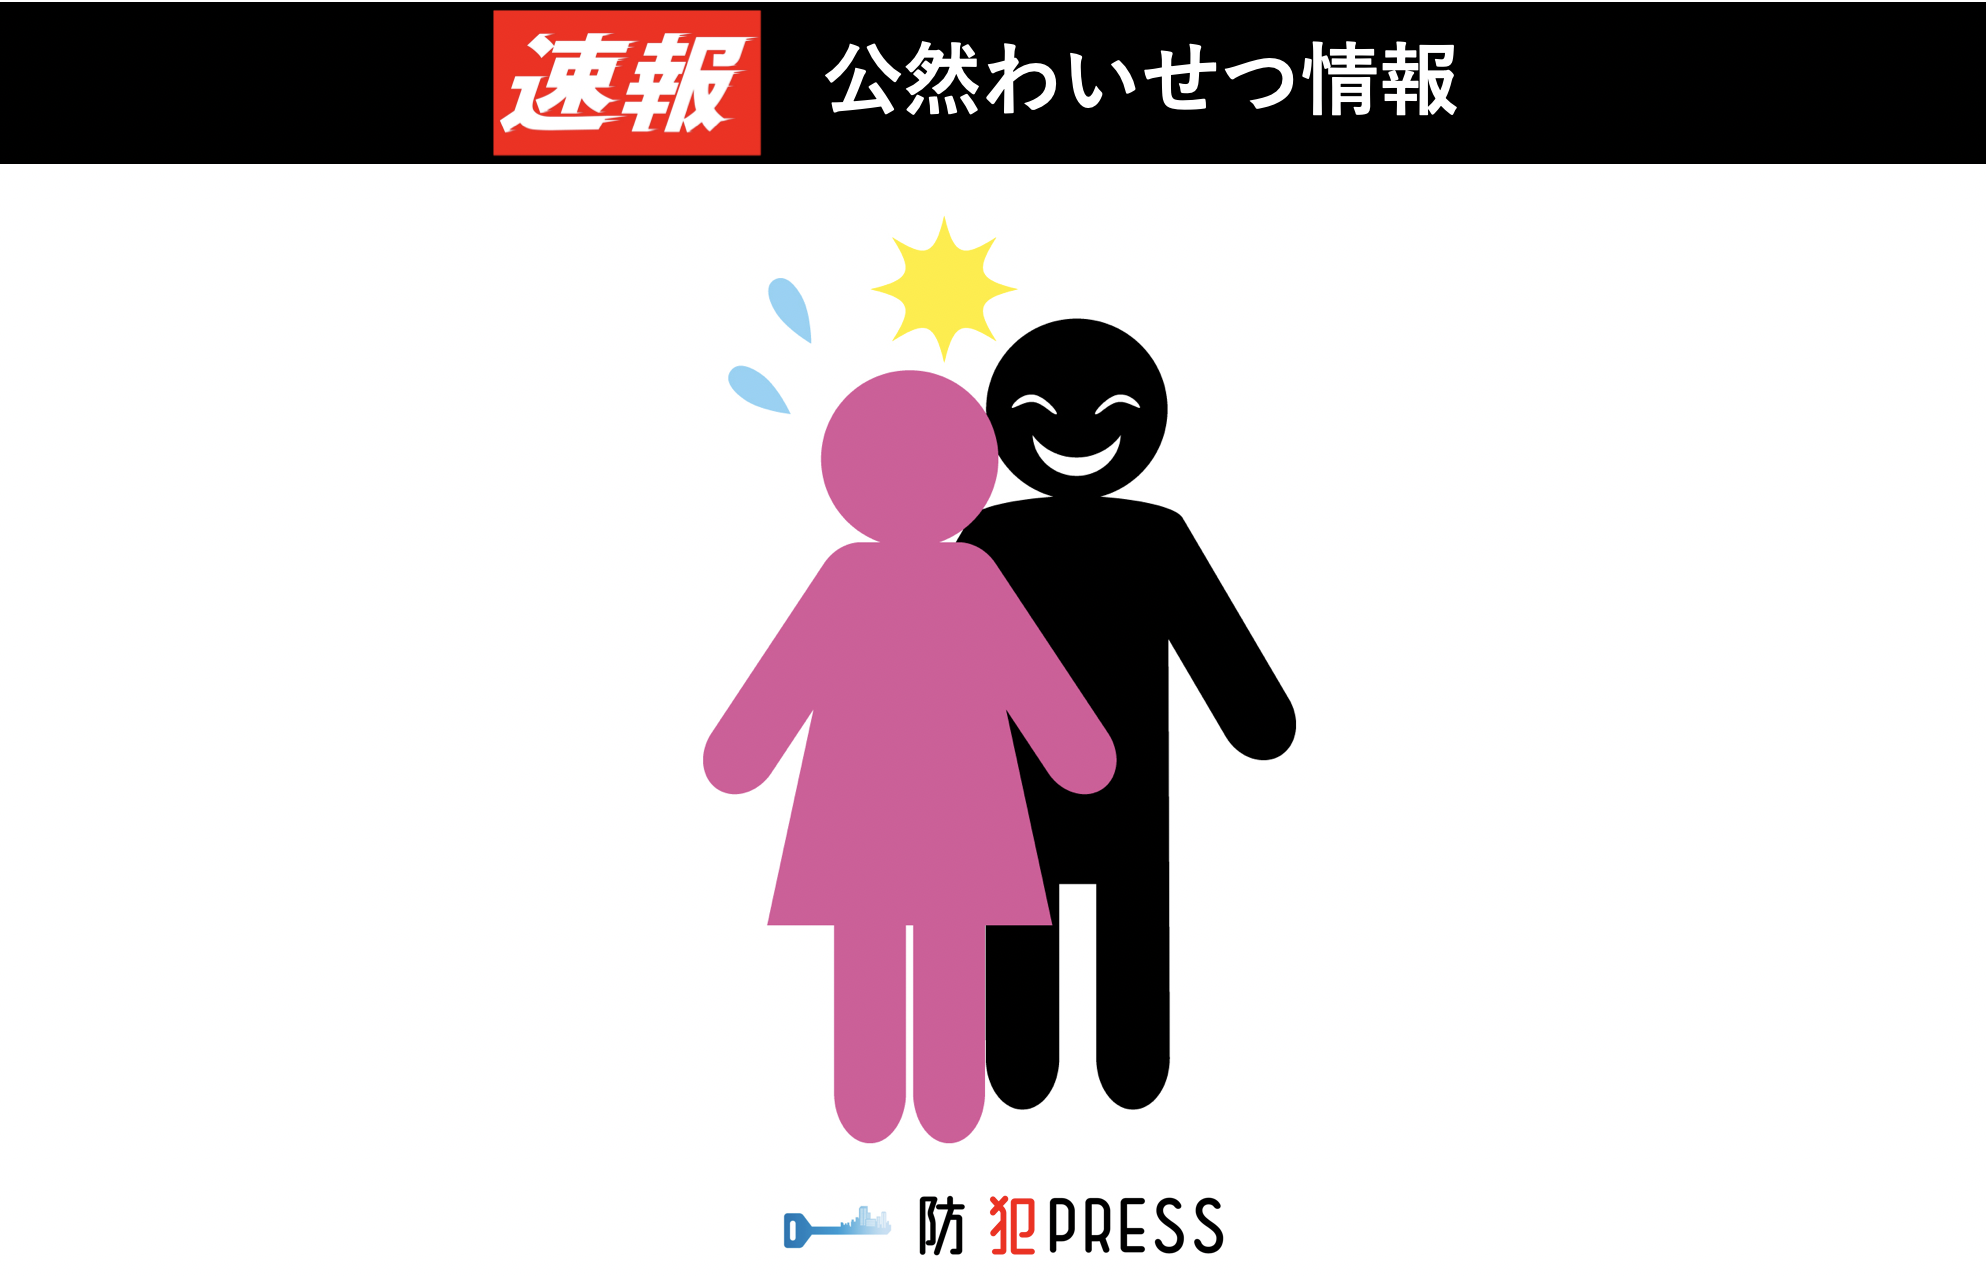 十和田市で発生した女性対象公然わいせつの解決